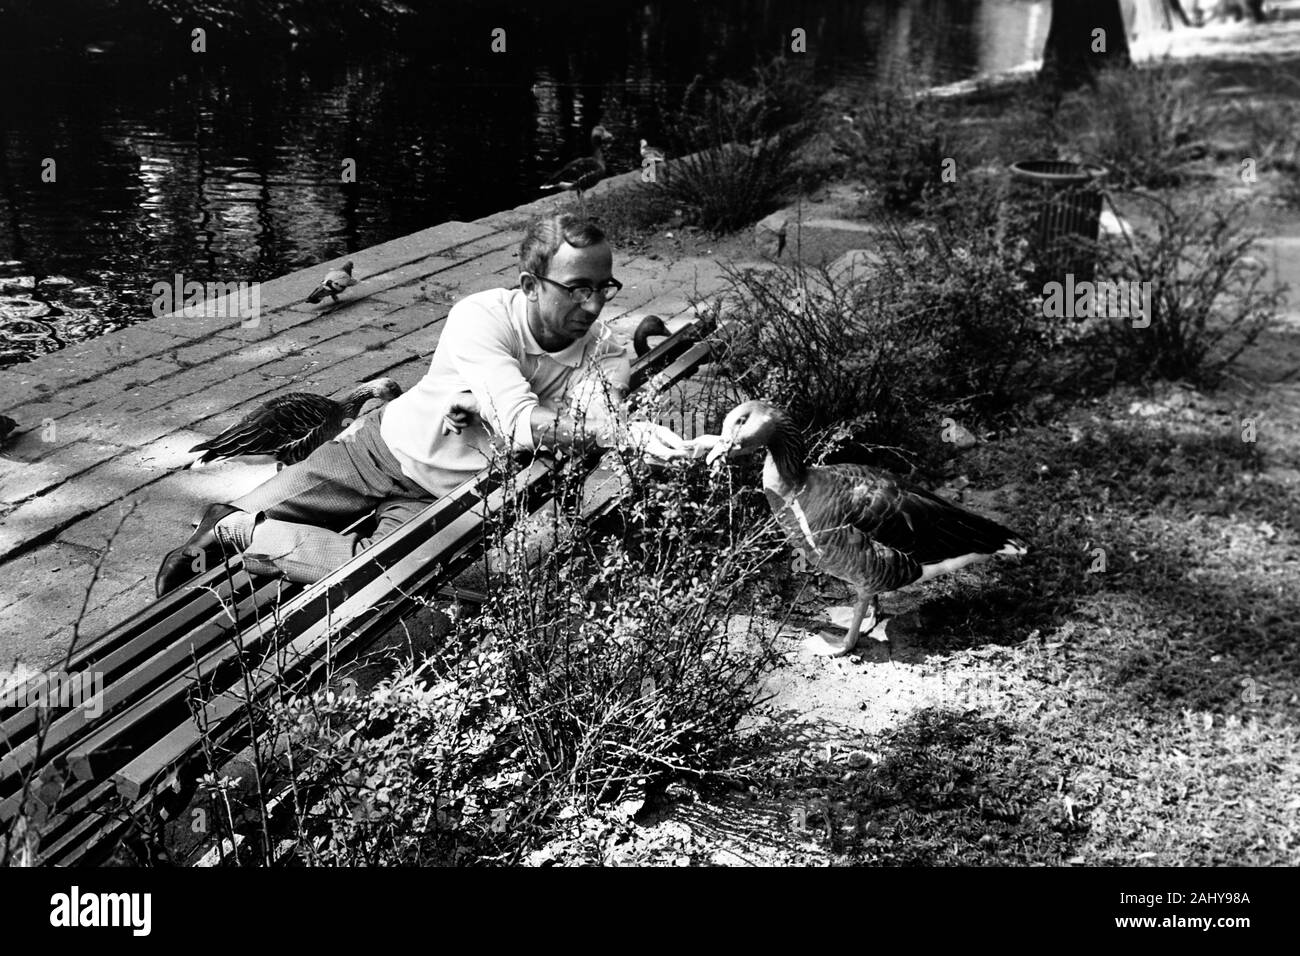 Gänse füttern im Schlosspark von Örebro, 1969. Feeding geese in the castle gardens in Örebro, 1969. Stock Photo